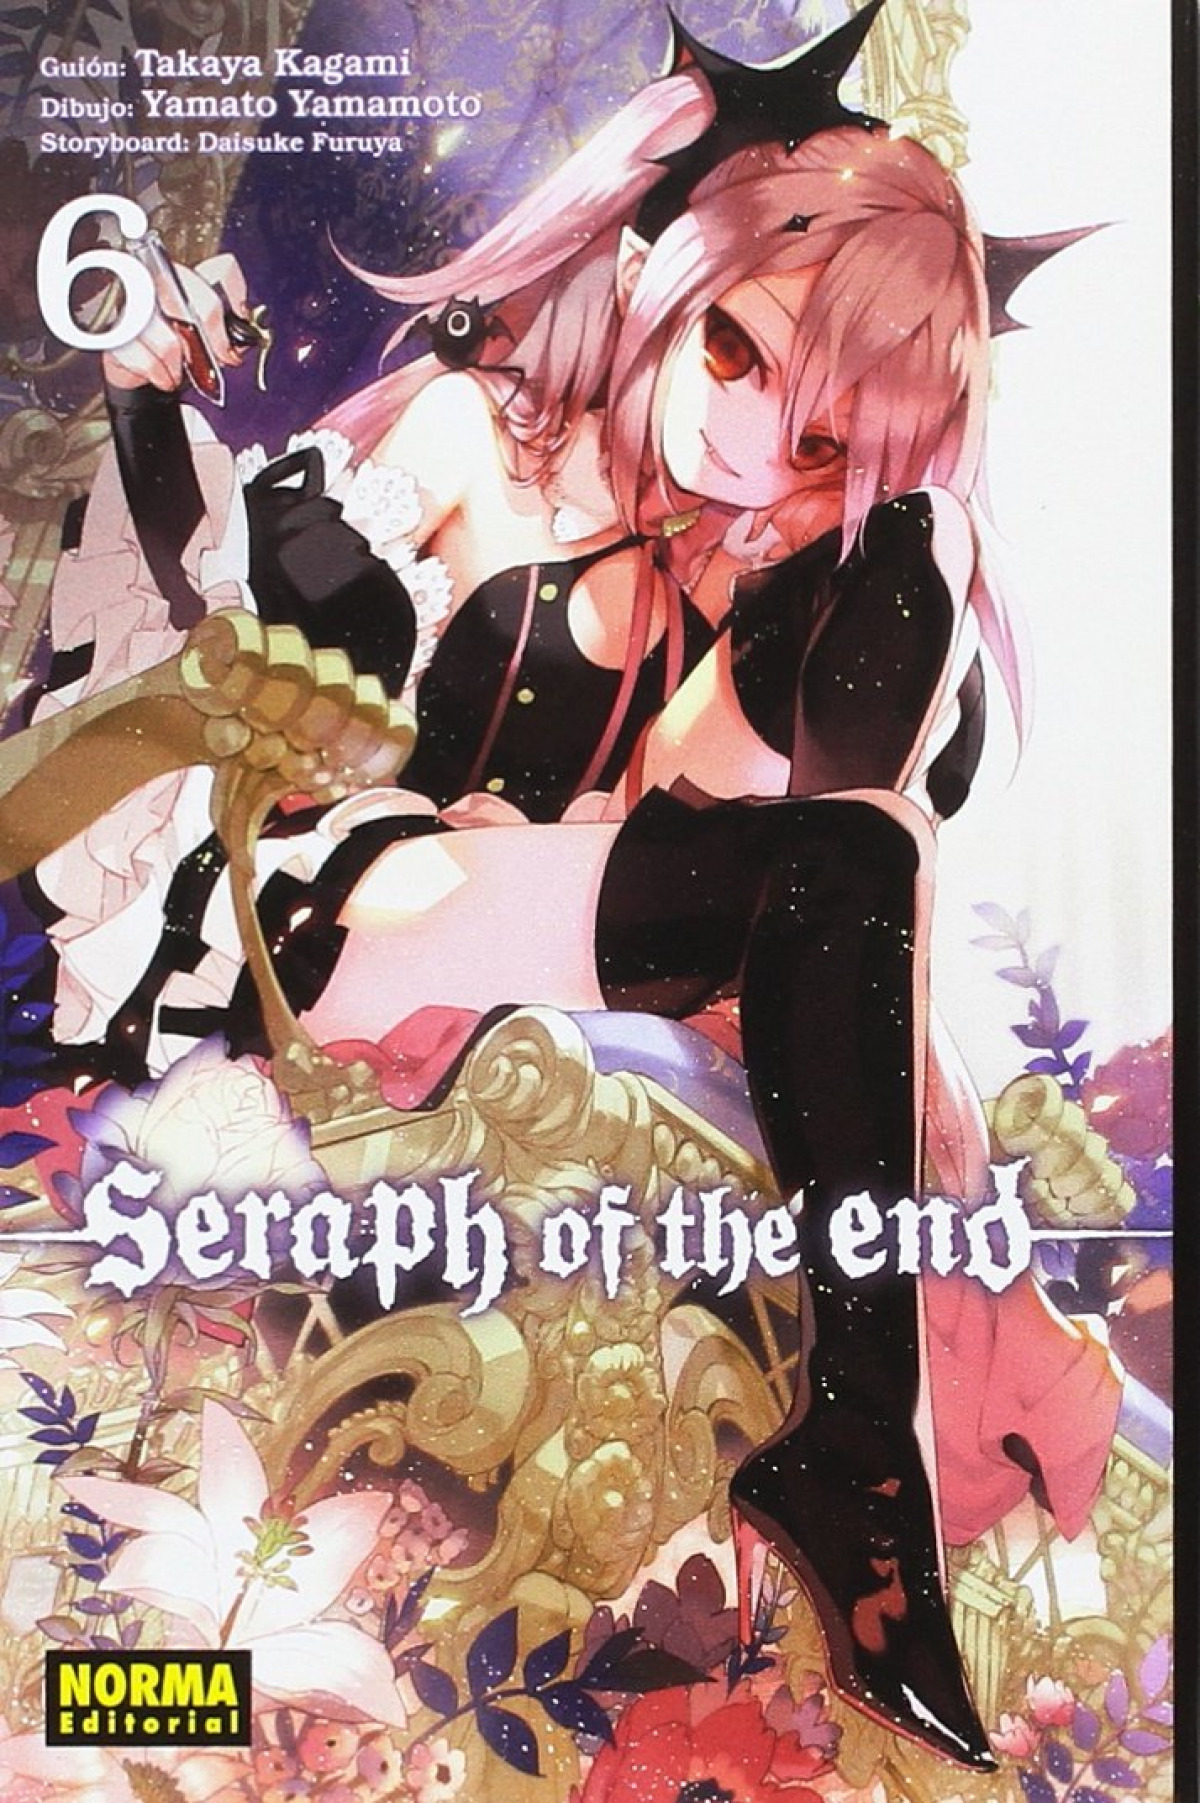 Seraph of the end 6 - Kagami/Yamamoto/Furuya